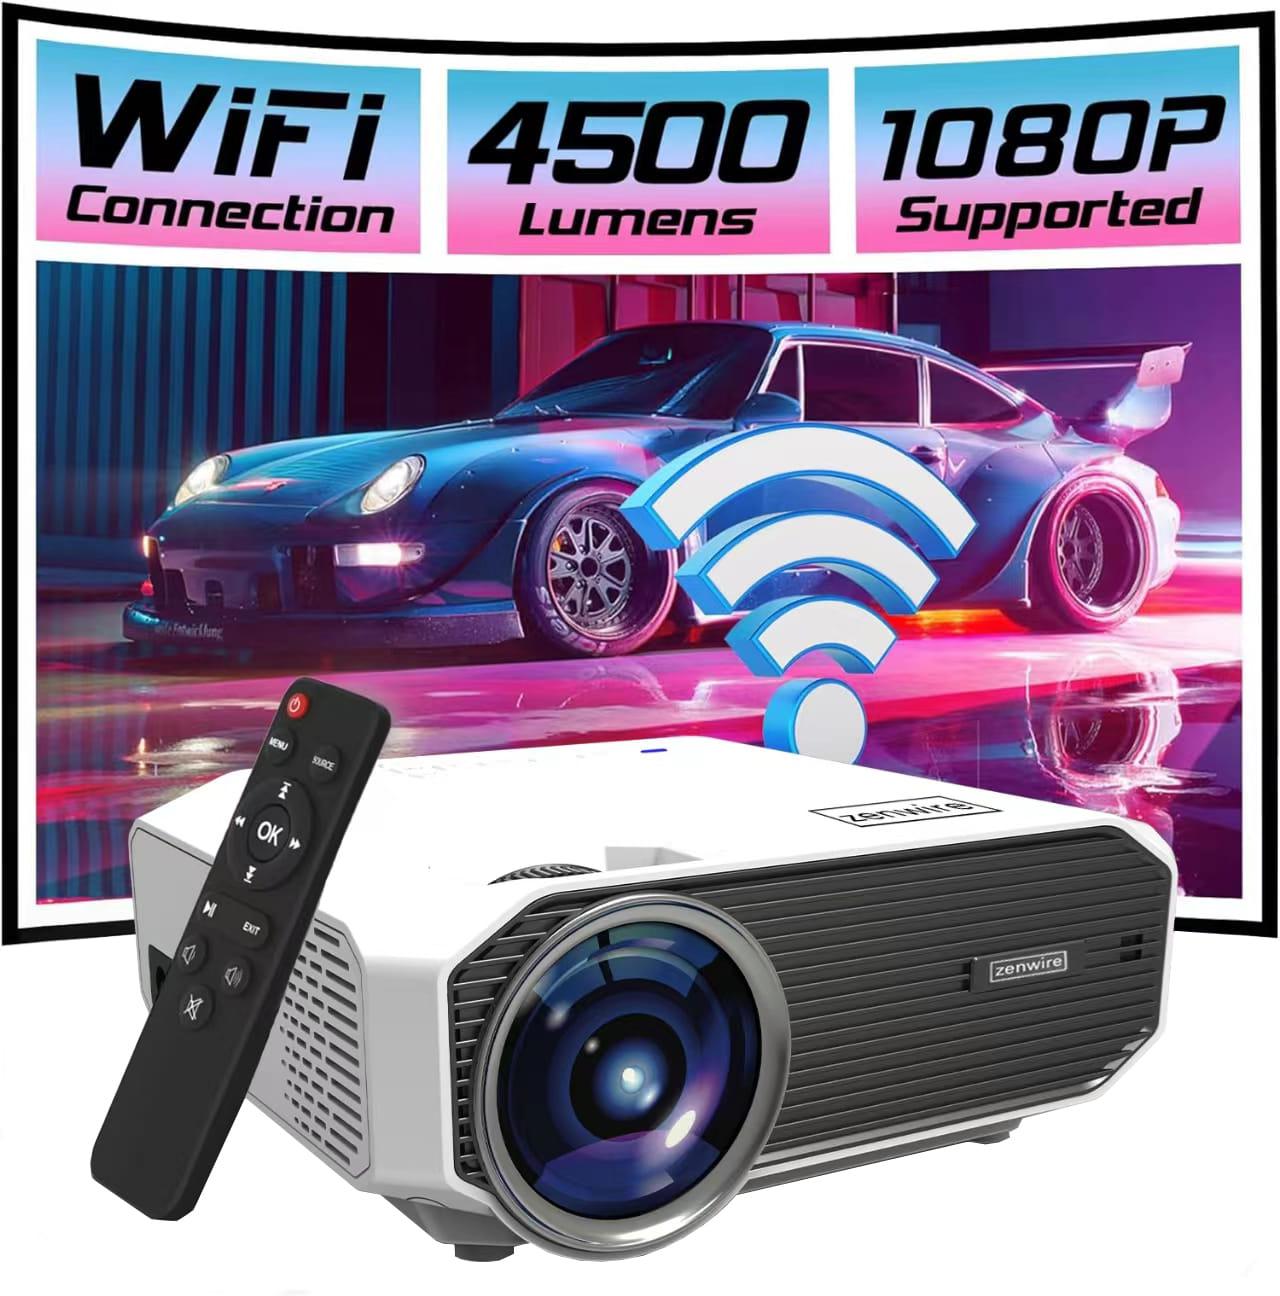 Mini Projektor Przenośny Rzutnik Full HD WiFi 2.4/5 Ghz Bluetooth 5.0 do telefonu i laptopa HDMI/USB/micro SD LED ZENWIRE E450S 4500lm 1500:1 36-150\" cali